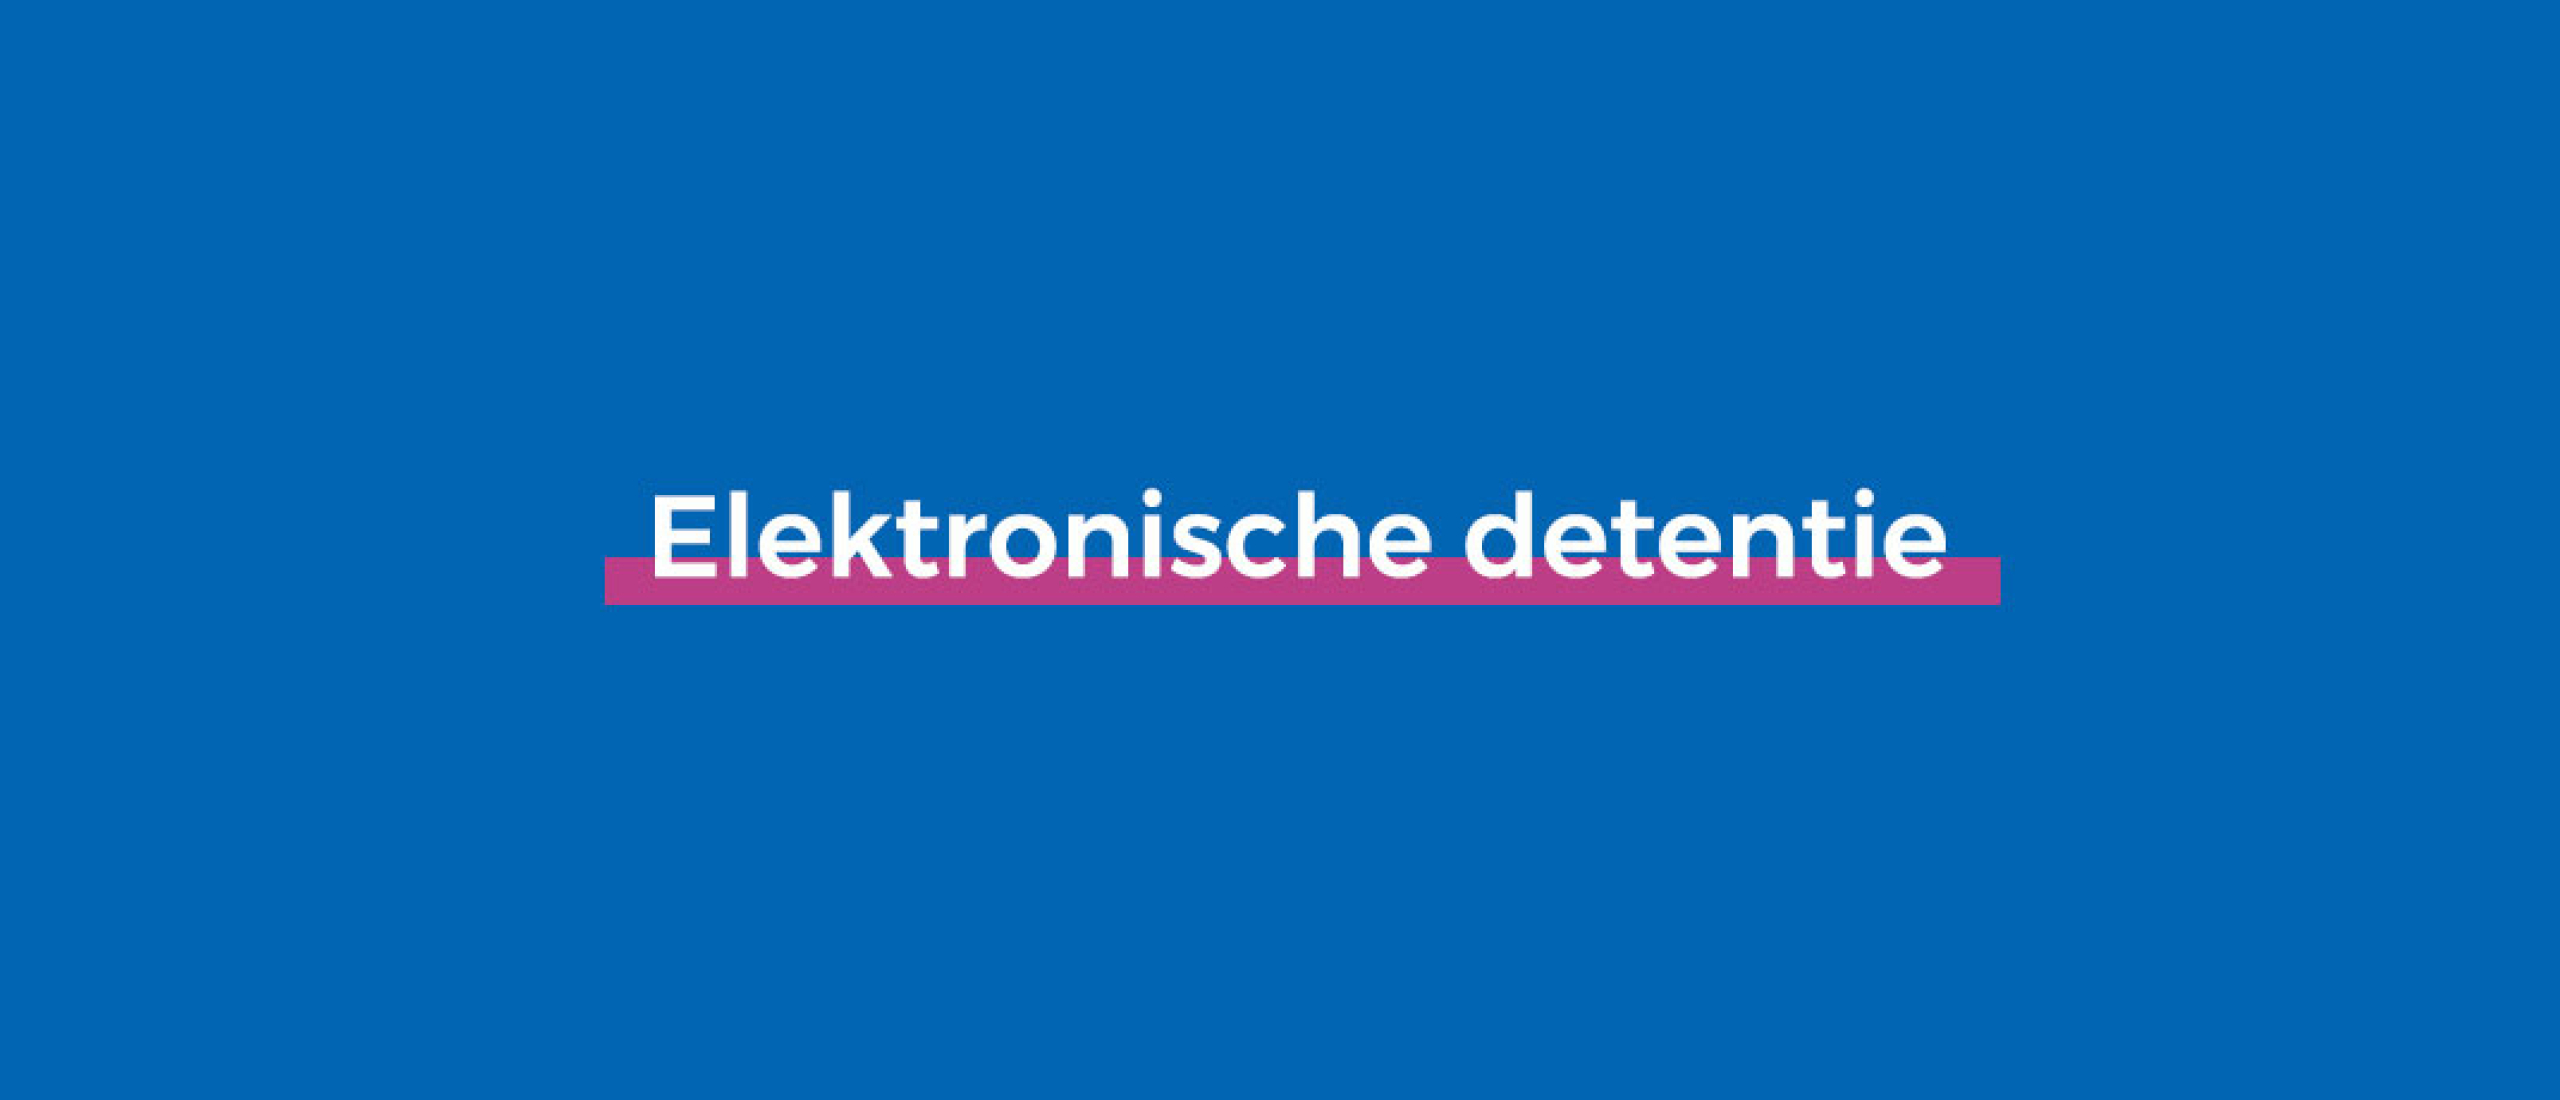 wat is elektronische detentie